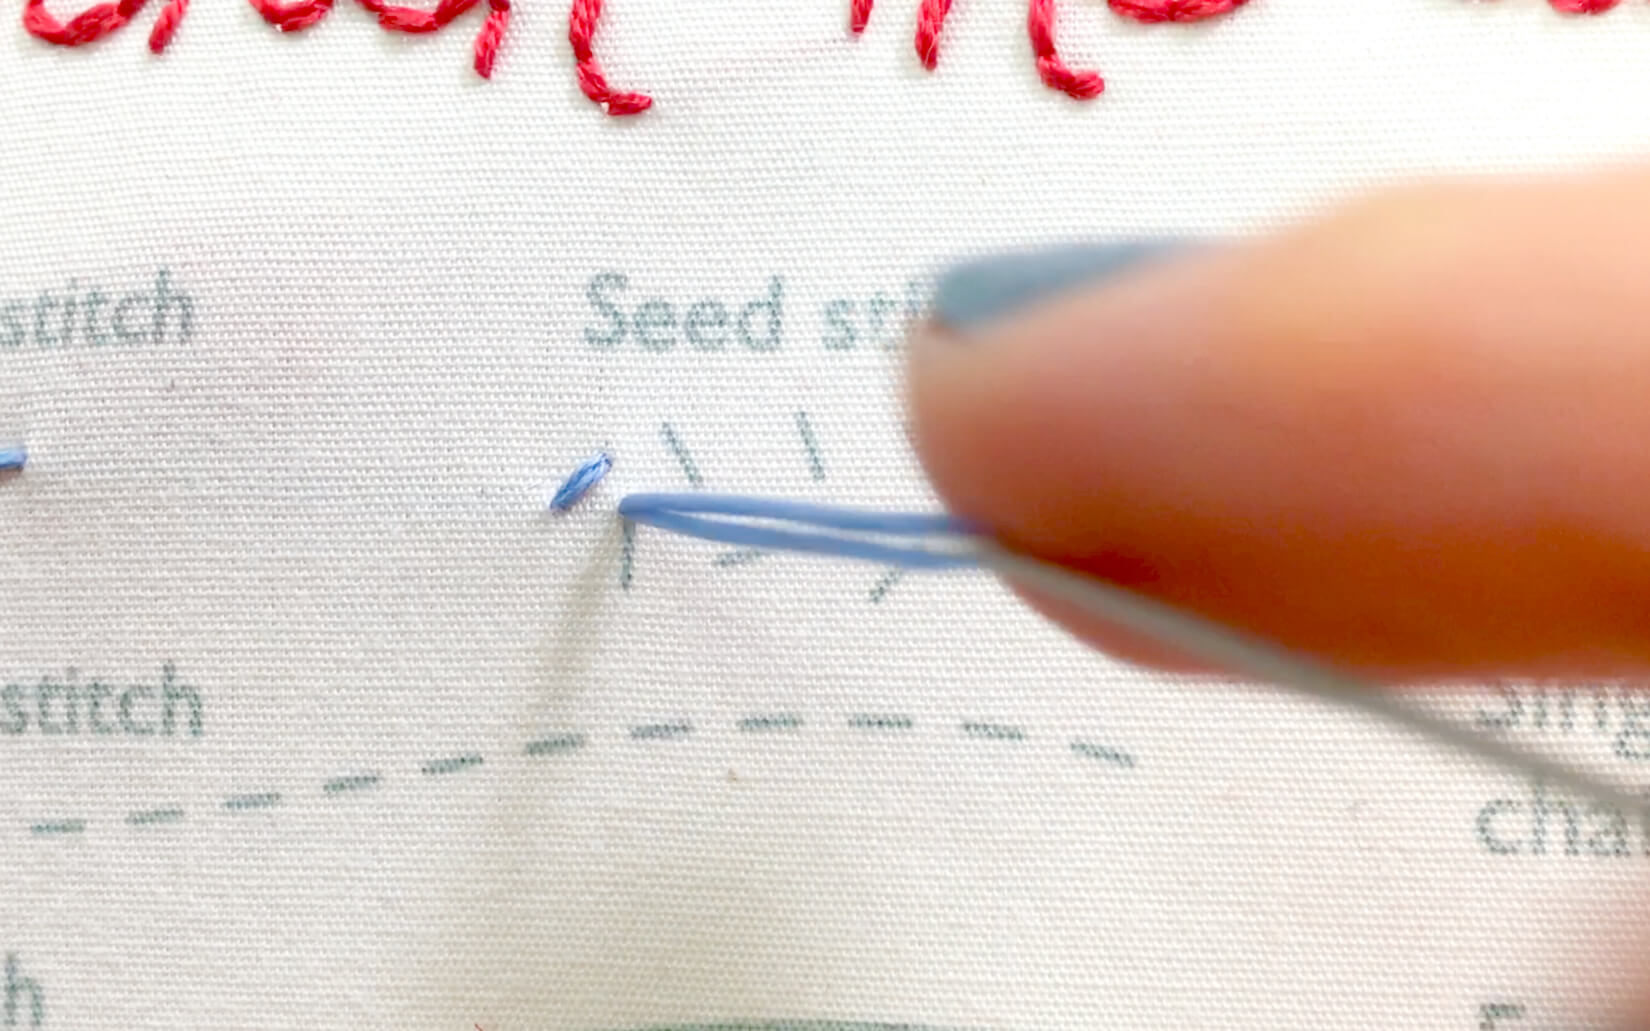 Image of stitching the seed stitch